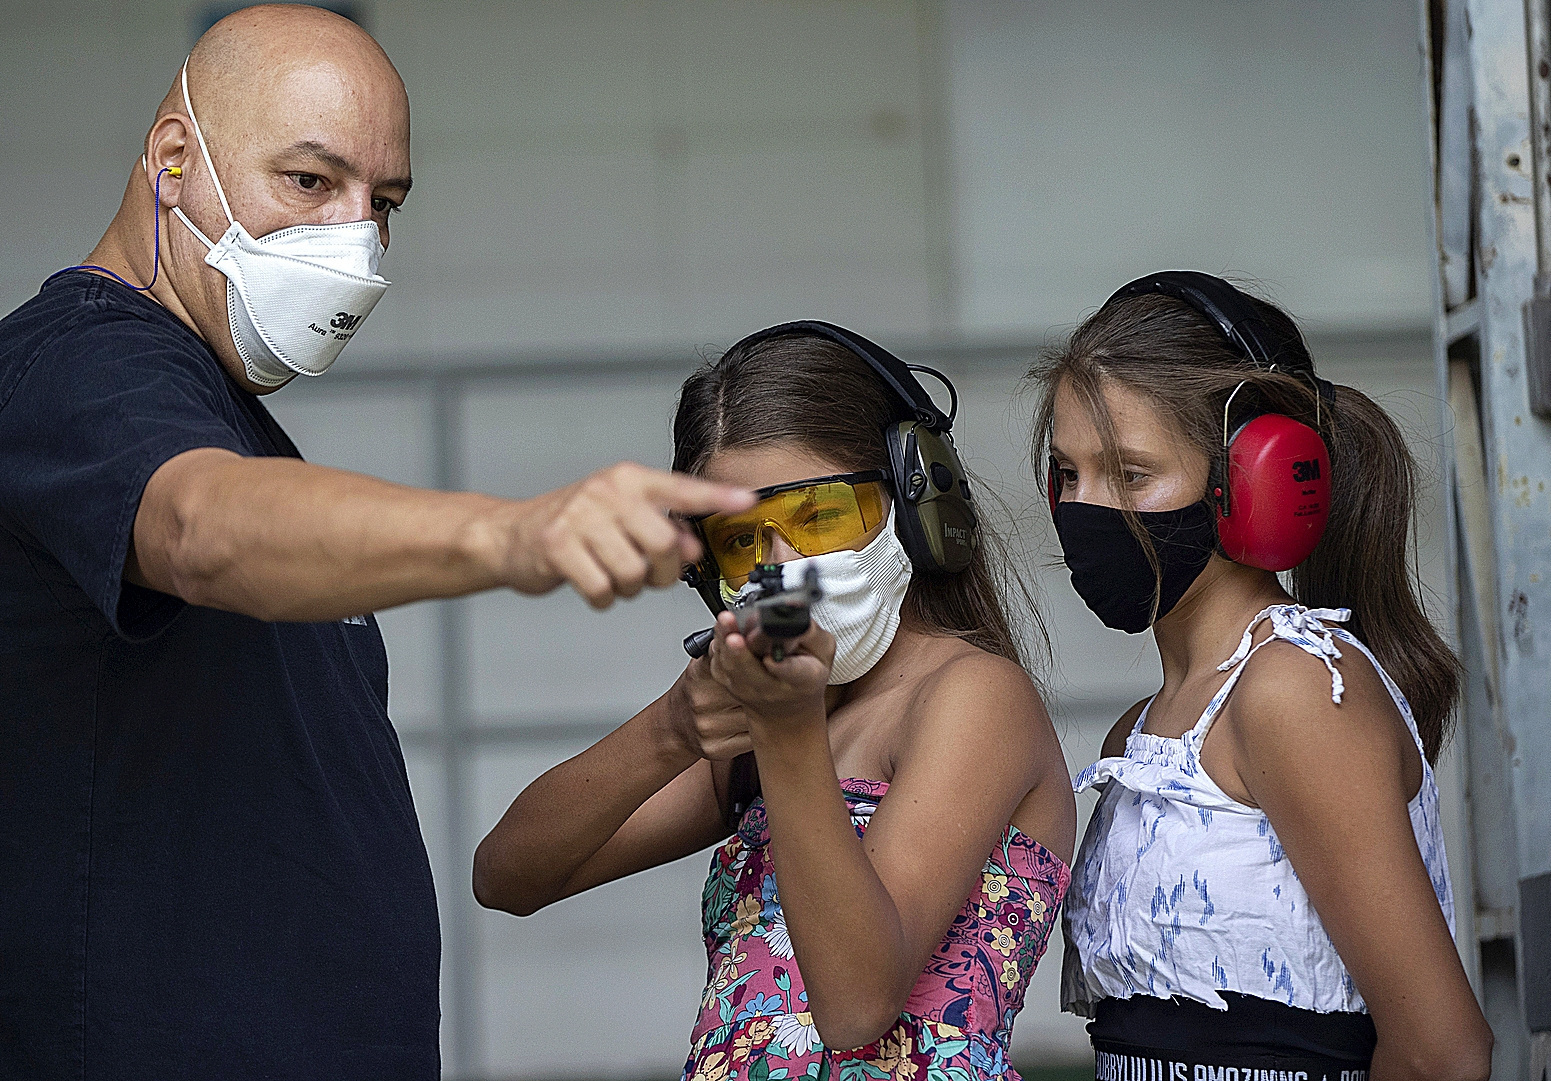 La fiebre por las armas convierte a Brasil en un polvorín